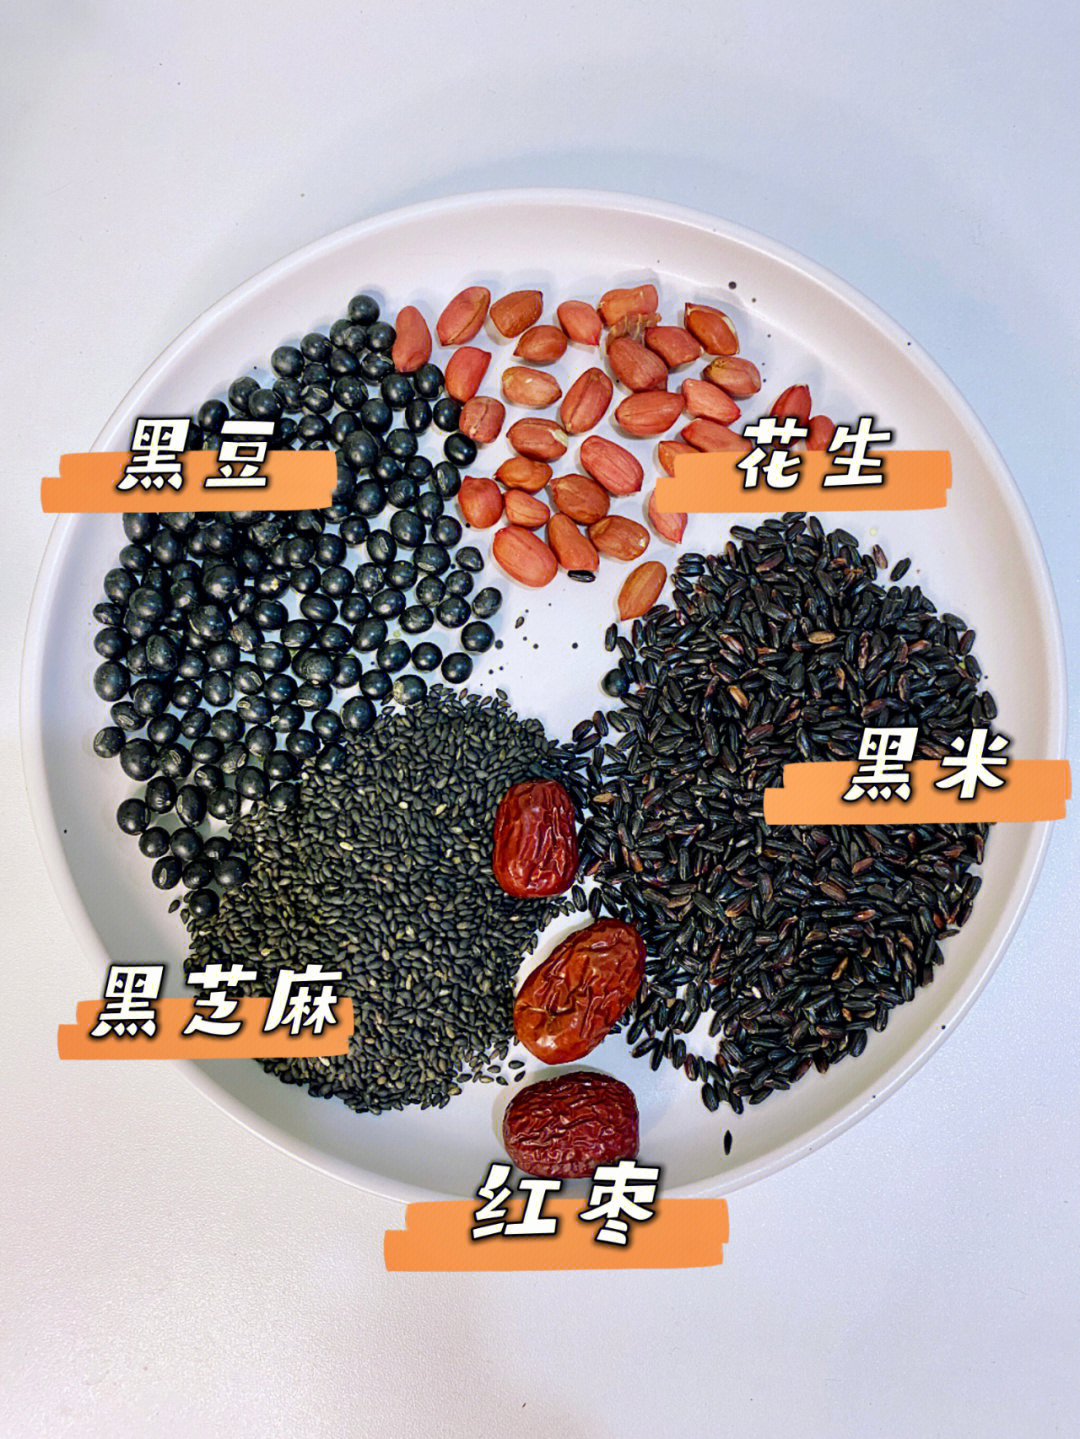 8715食材准备:黑米30克,黑豆30克,红枣3个,花生15克,黑芝麻20克